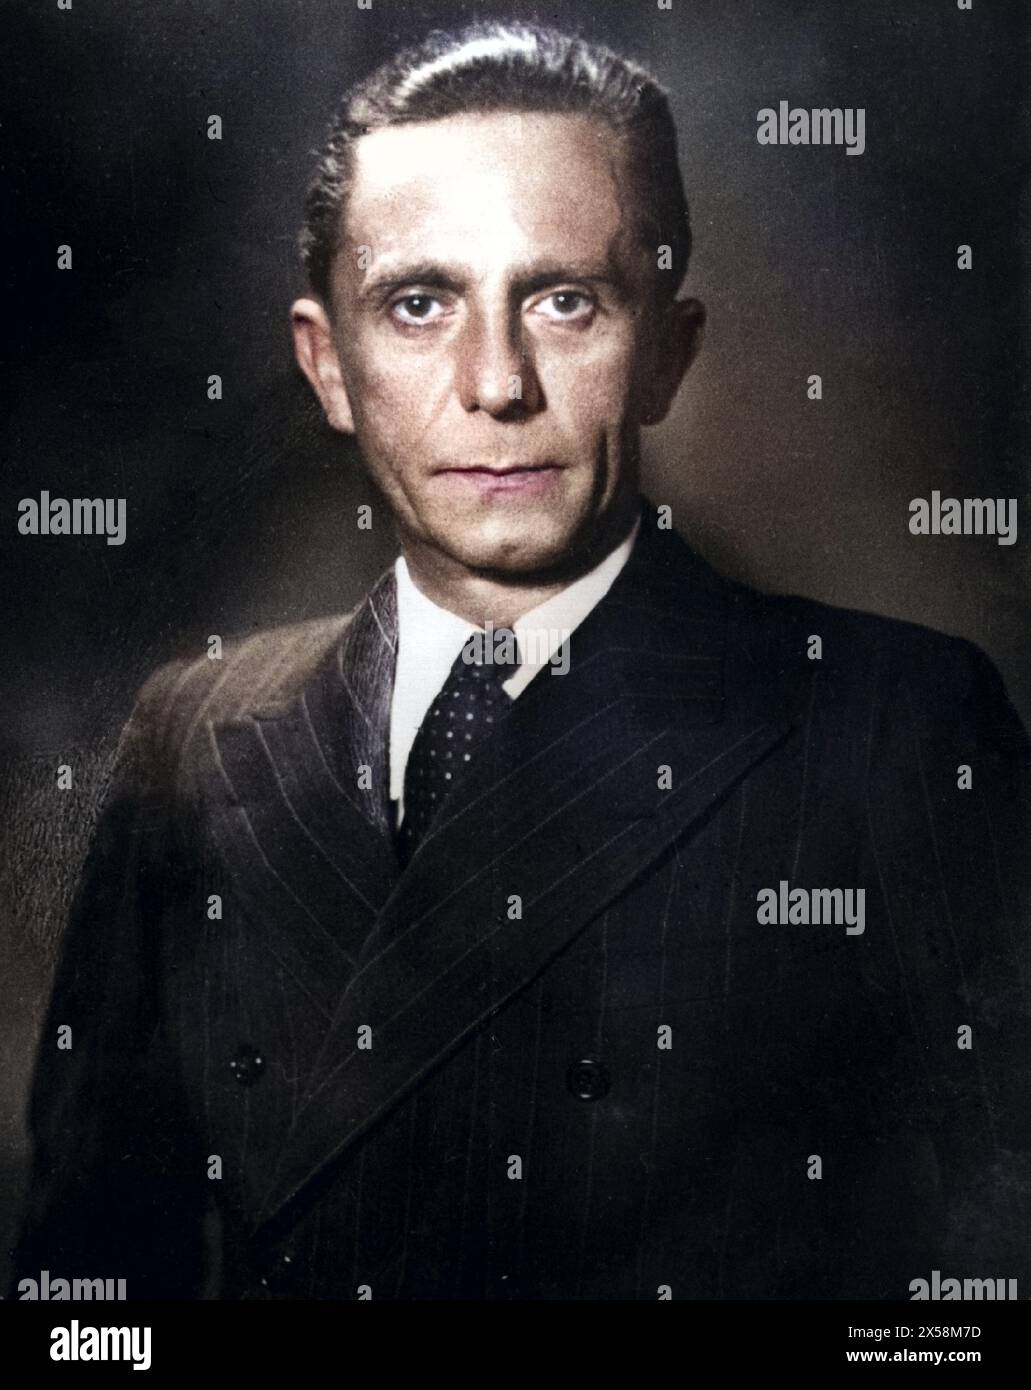 Goebbels, Joseph, 29.10.1897 - 1,5.1945, homme politique allemand (NSDAP), portrait, 1942, USAGE ÉDITORIAL EXCLUSIF Banque D'Images